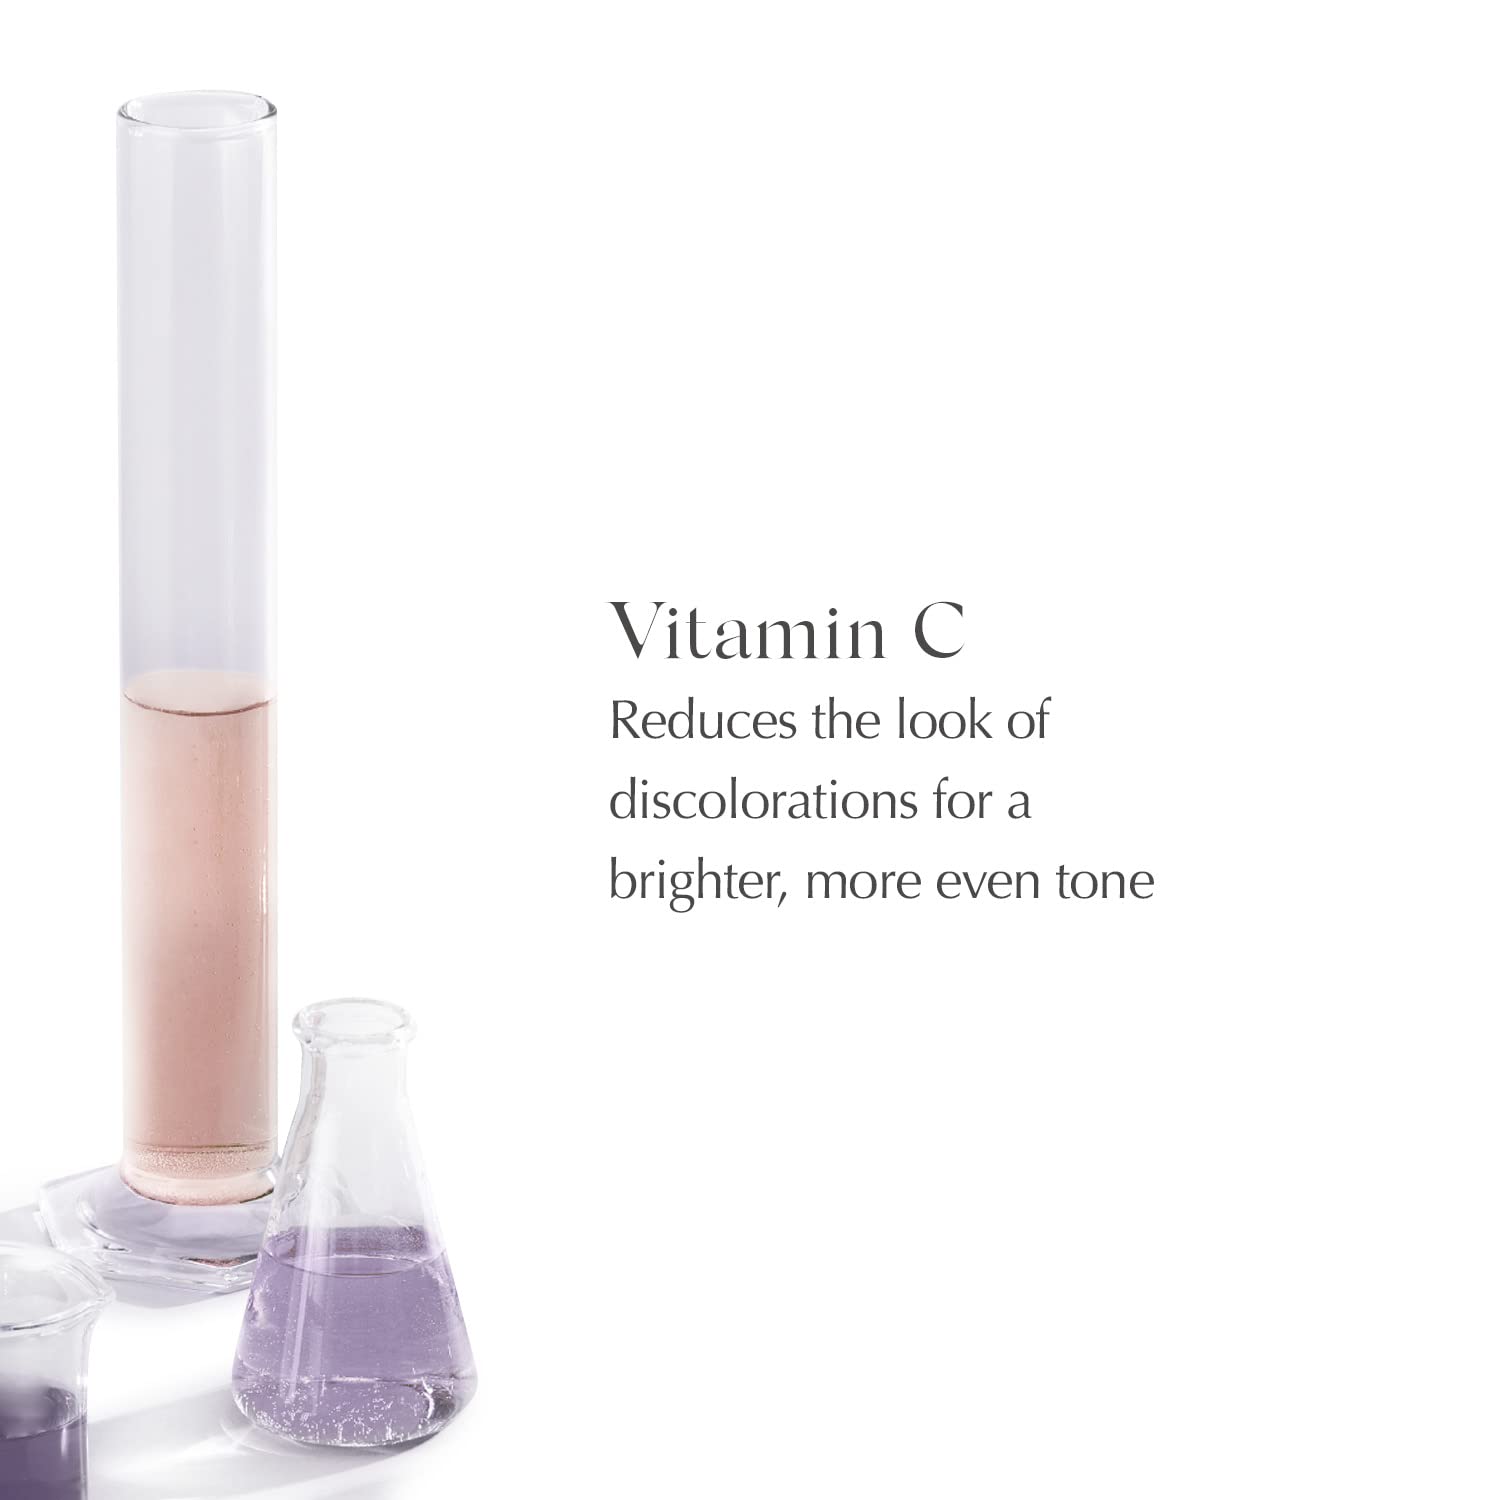 EXUVIANCE Vitamin C Serum Maximum Effective Strength Single-use Capsul